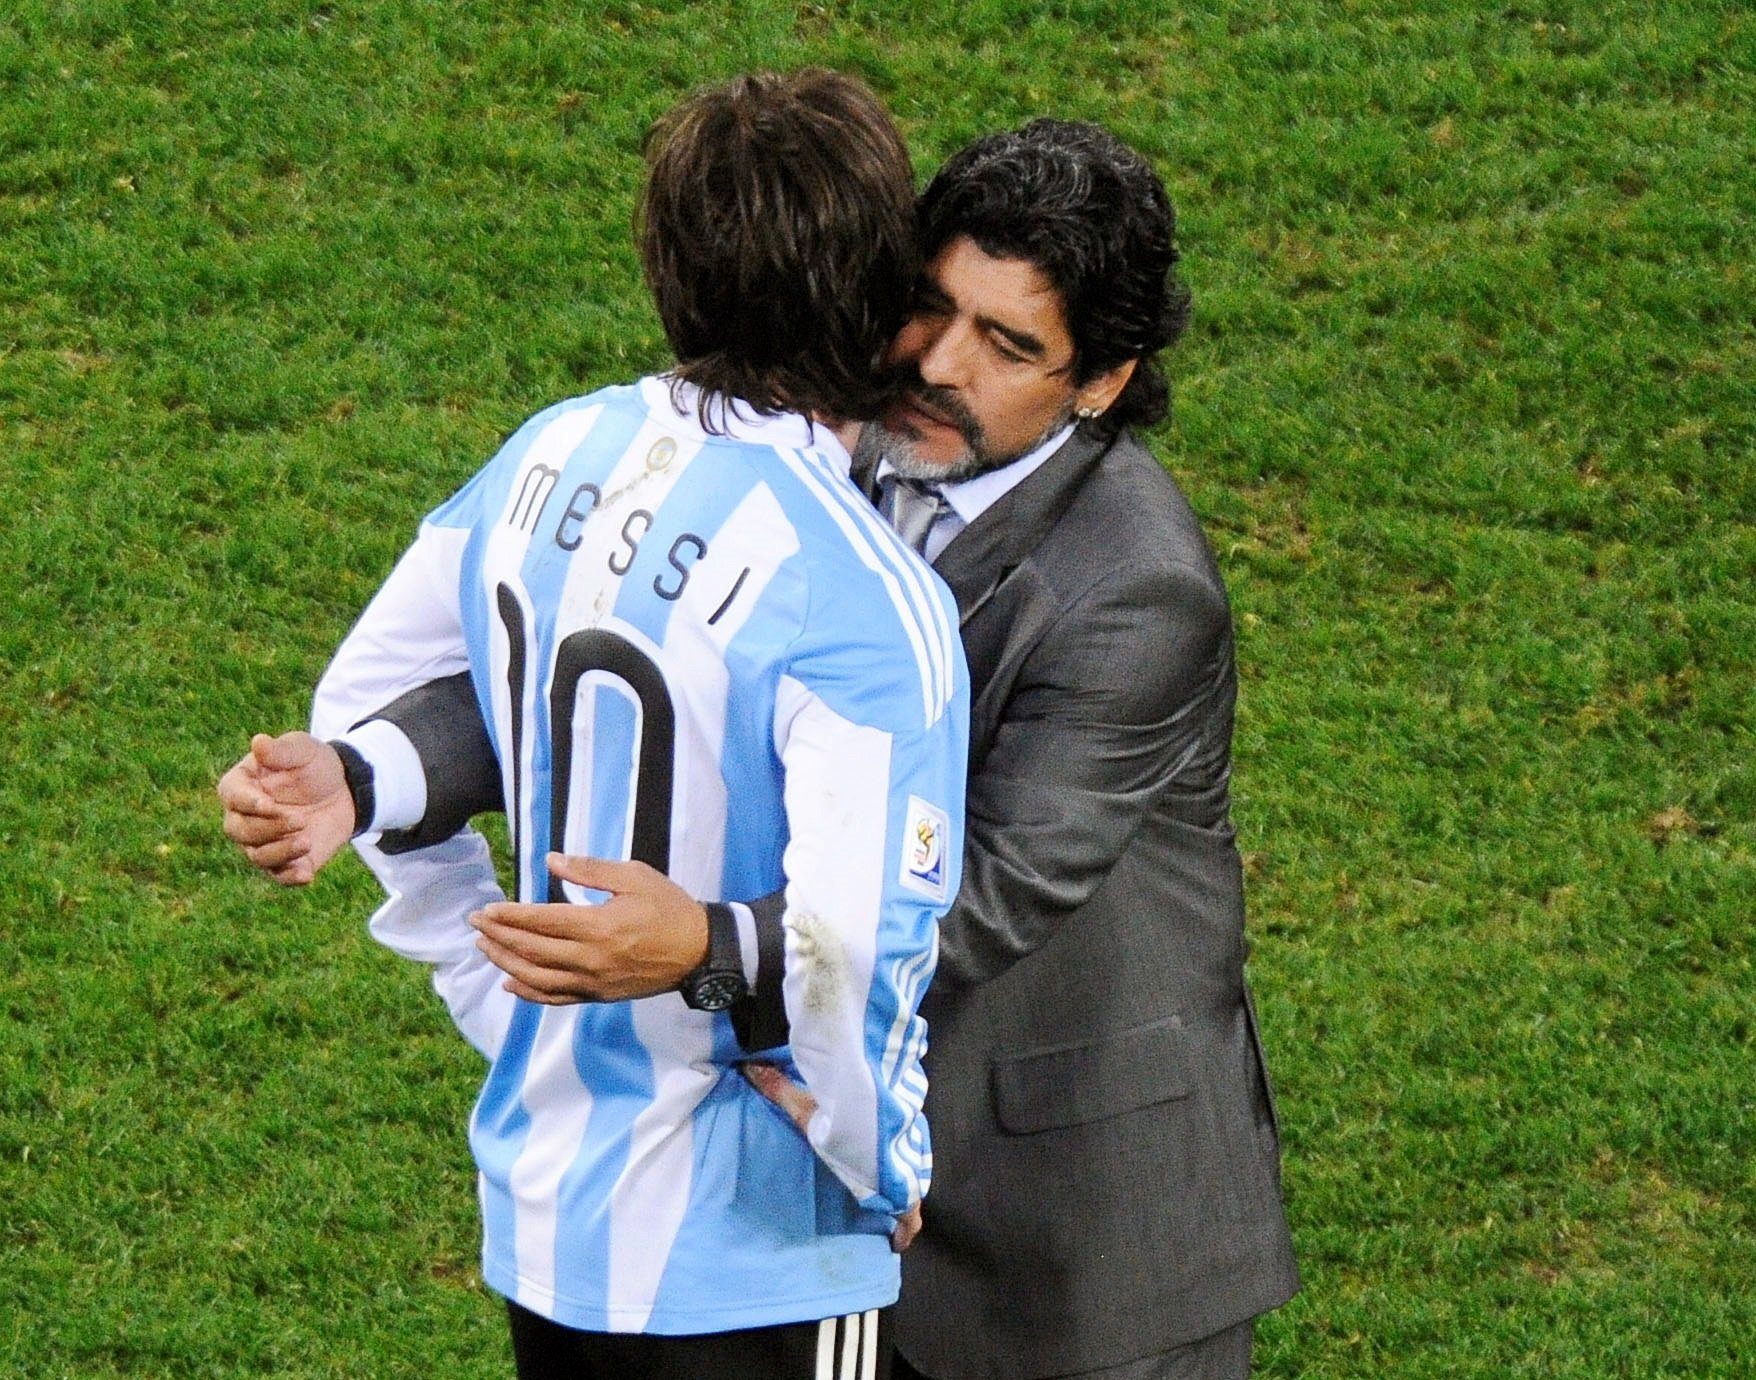 Les increïbles 3 coincidències entre Messi i Maradona en el gol de l'homenatge